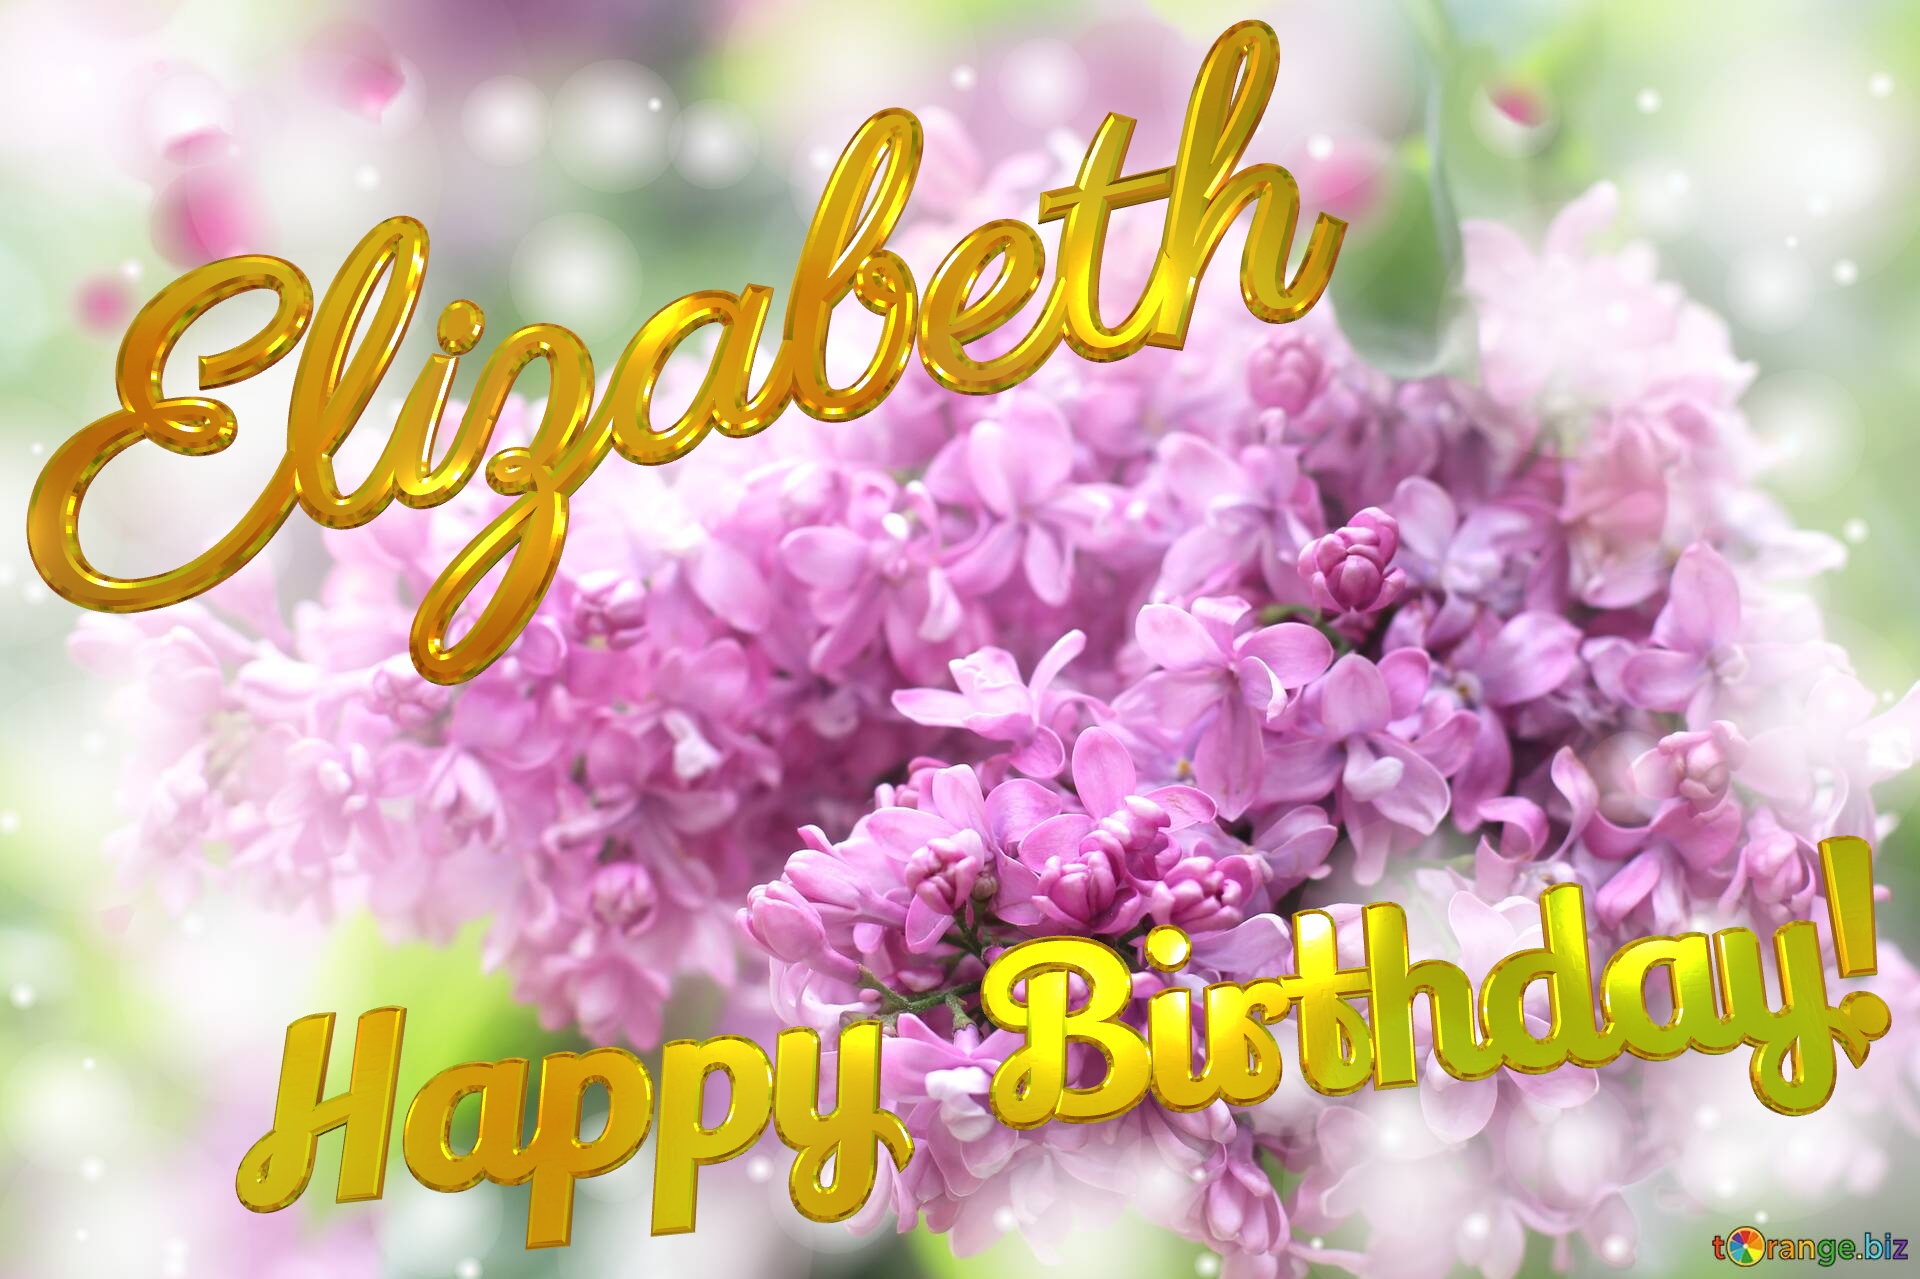 Elizabeth Happy Birthday! Lilac №0